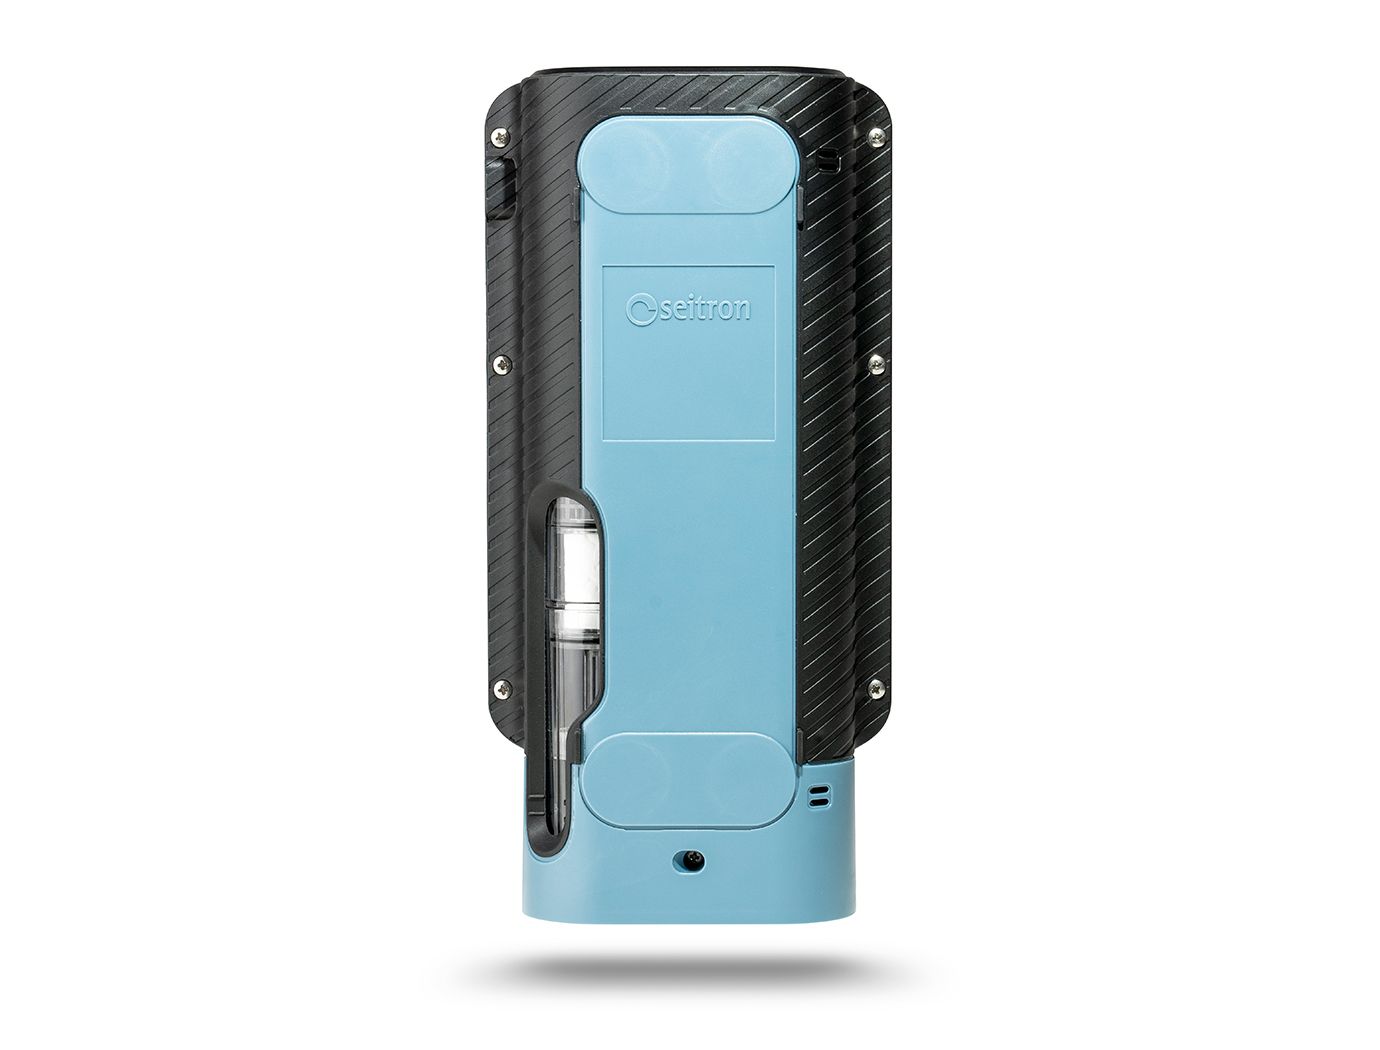 Seitron Novo 3 ST analizzatore portatile di combustione - fumi 02, CO, NO con stampante bluetooth